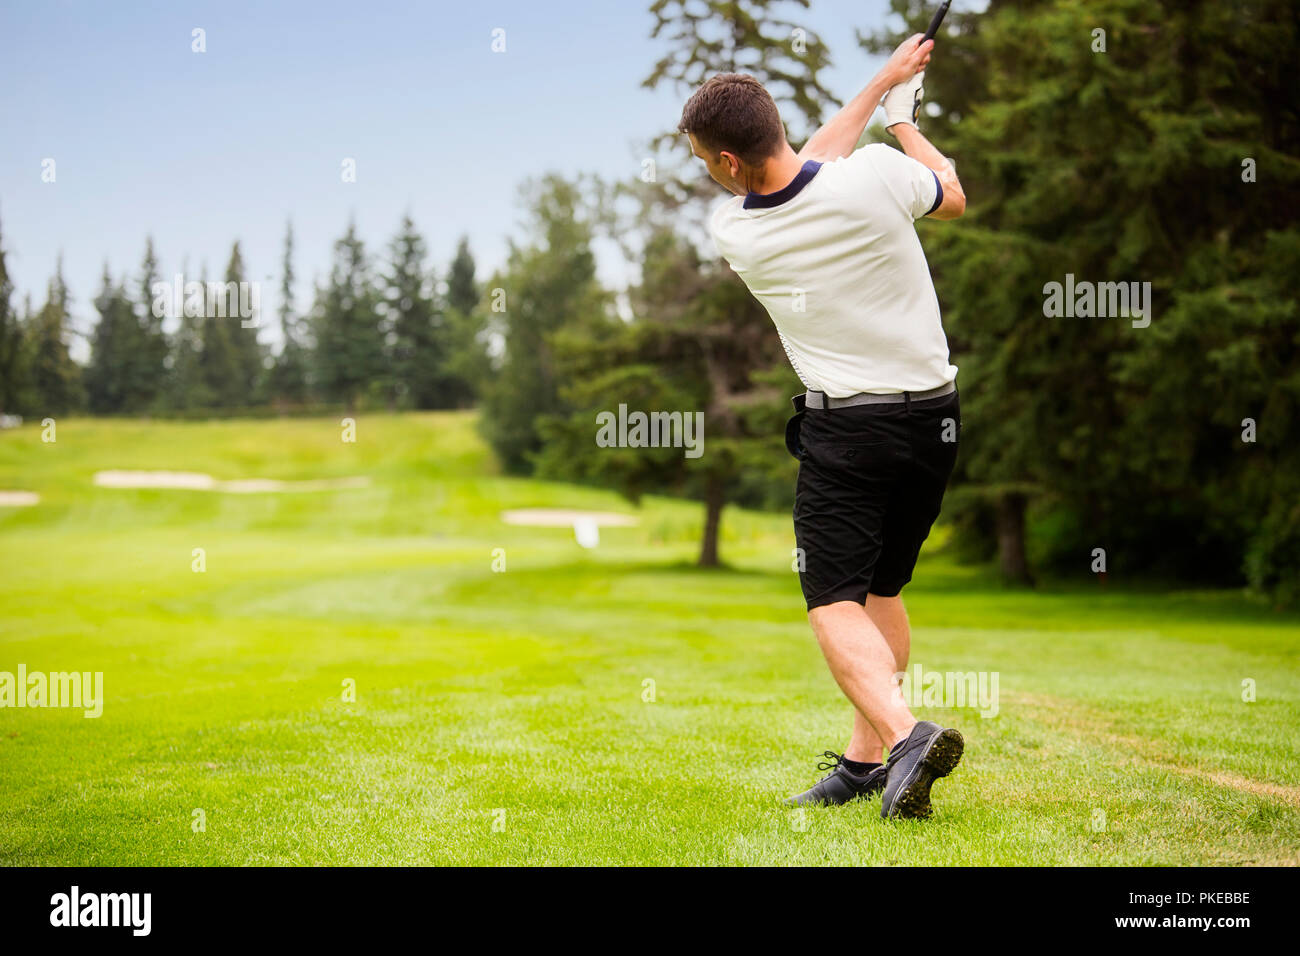 Ein männlicher Golfspieler driving a Golf Ball hinunter die Fahrrinne eines Golfkurses mit der Kugel in der Luft; Edmonton, Alberta, Kanada Stockfoto